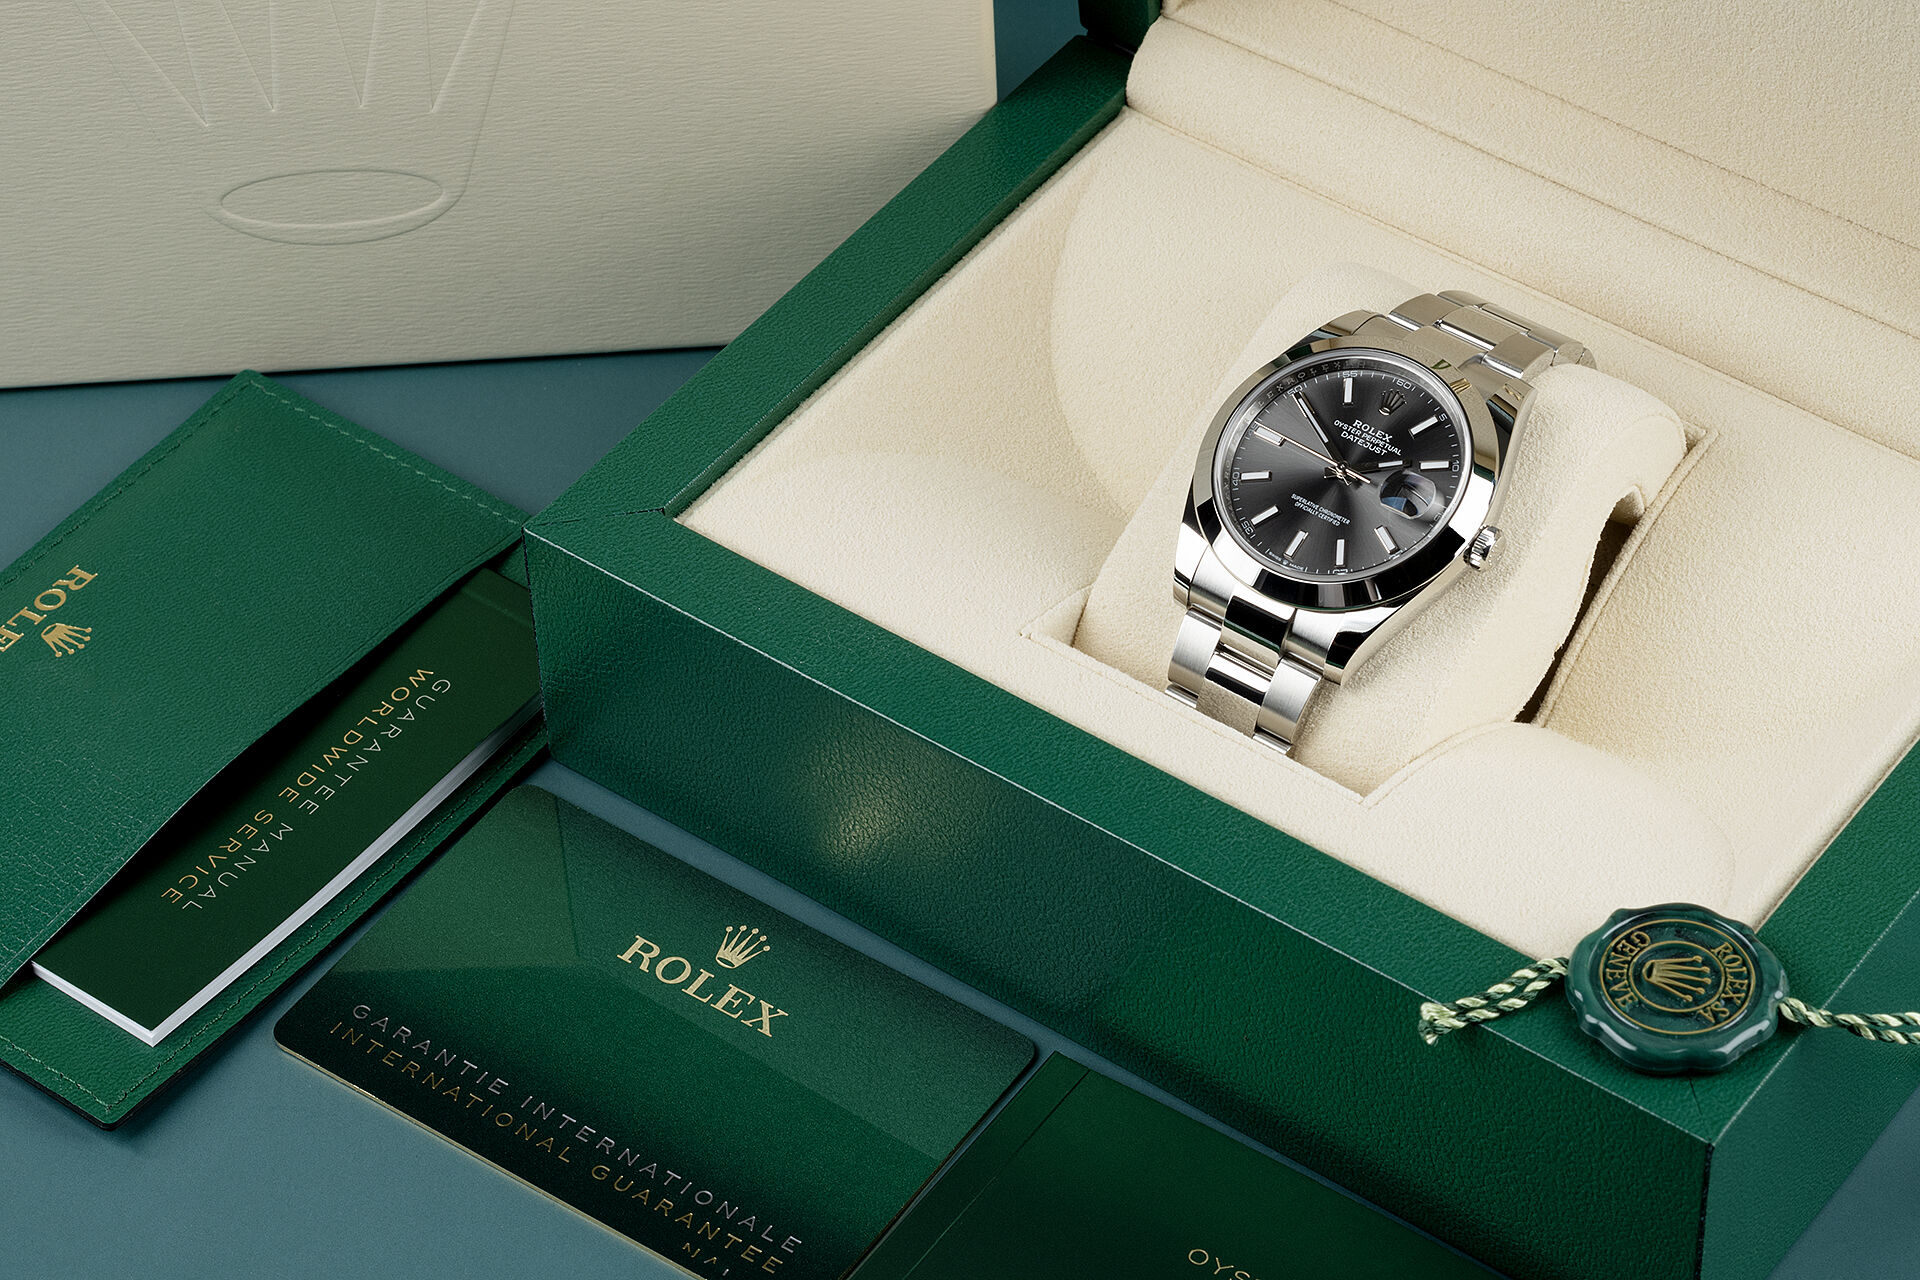 ref 126300 | Brand New 5 Year Warranty  | Rolex Datejust 41